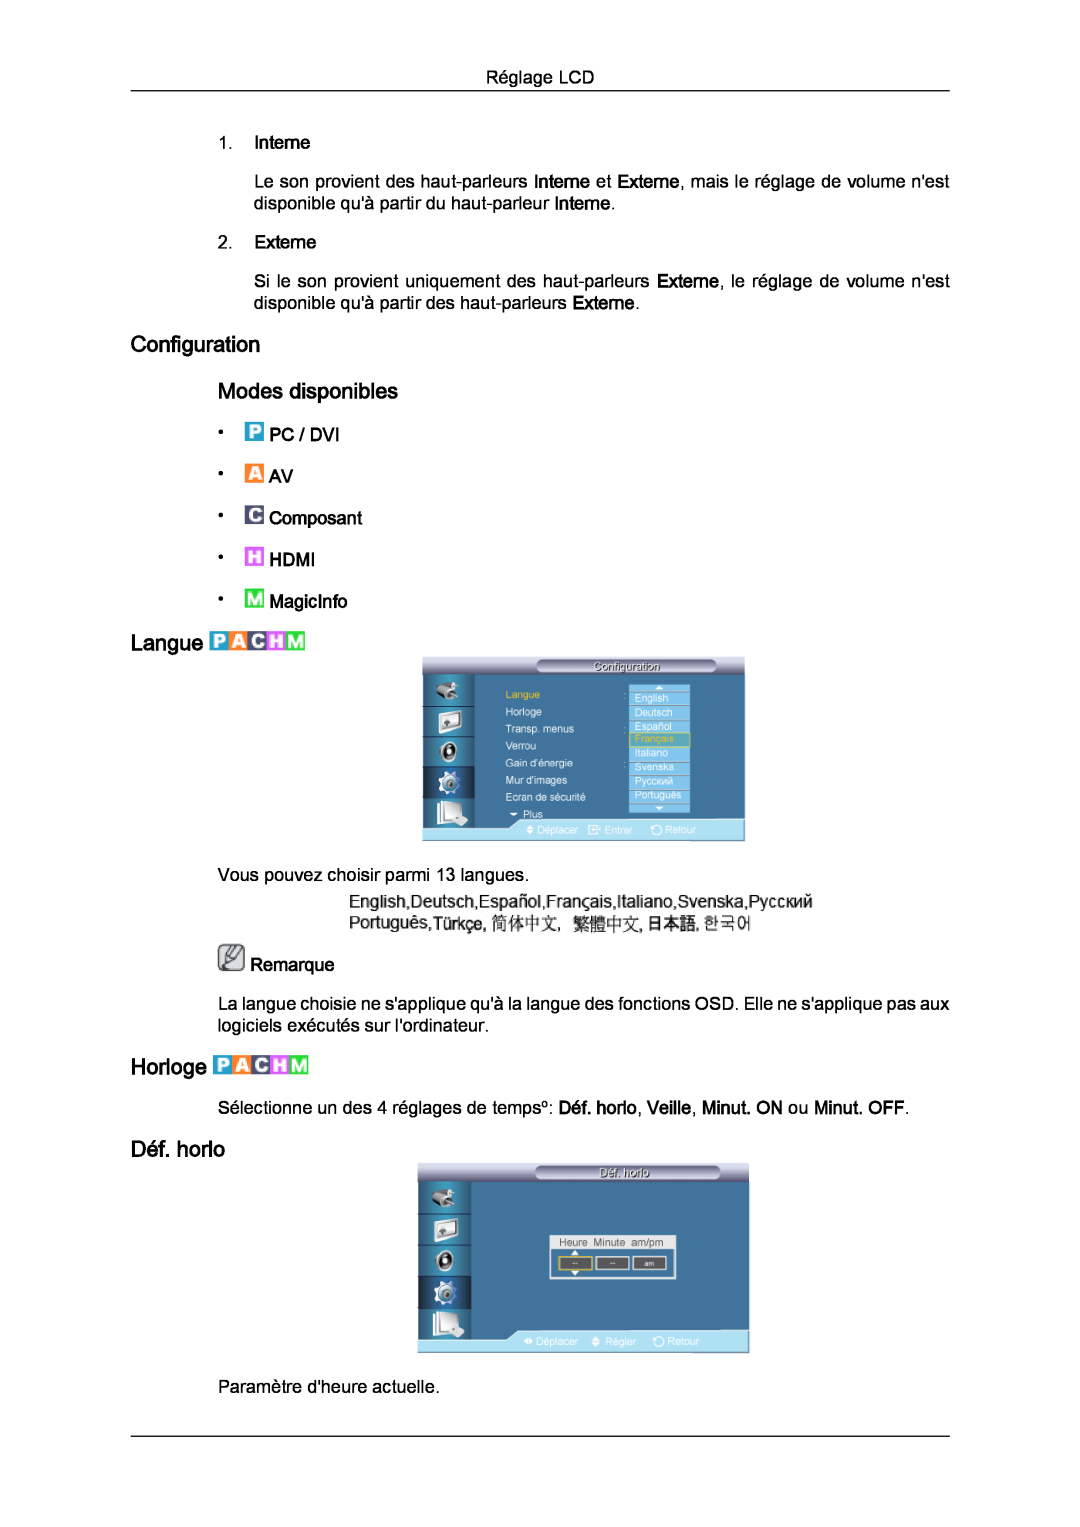 Samsung LH70TCSMBG/EN manual Configuration Modes disponibles, Langue, Horloge, Déf. horlo, Interne, Externe, Remarque 